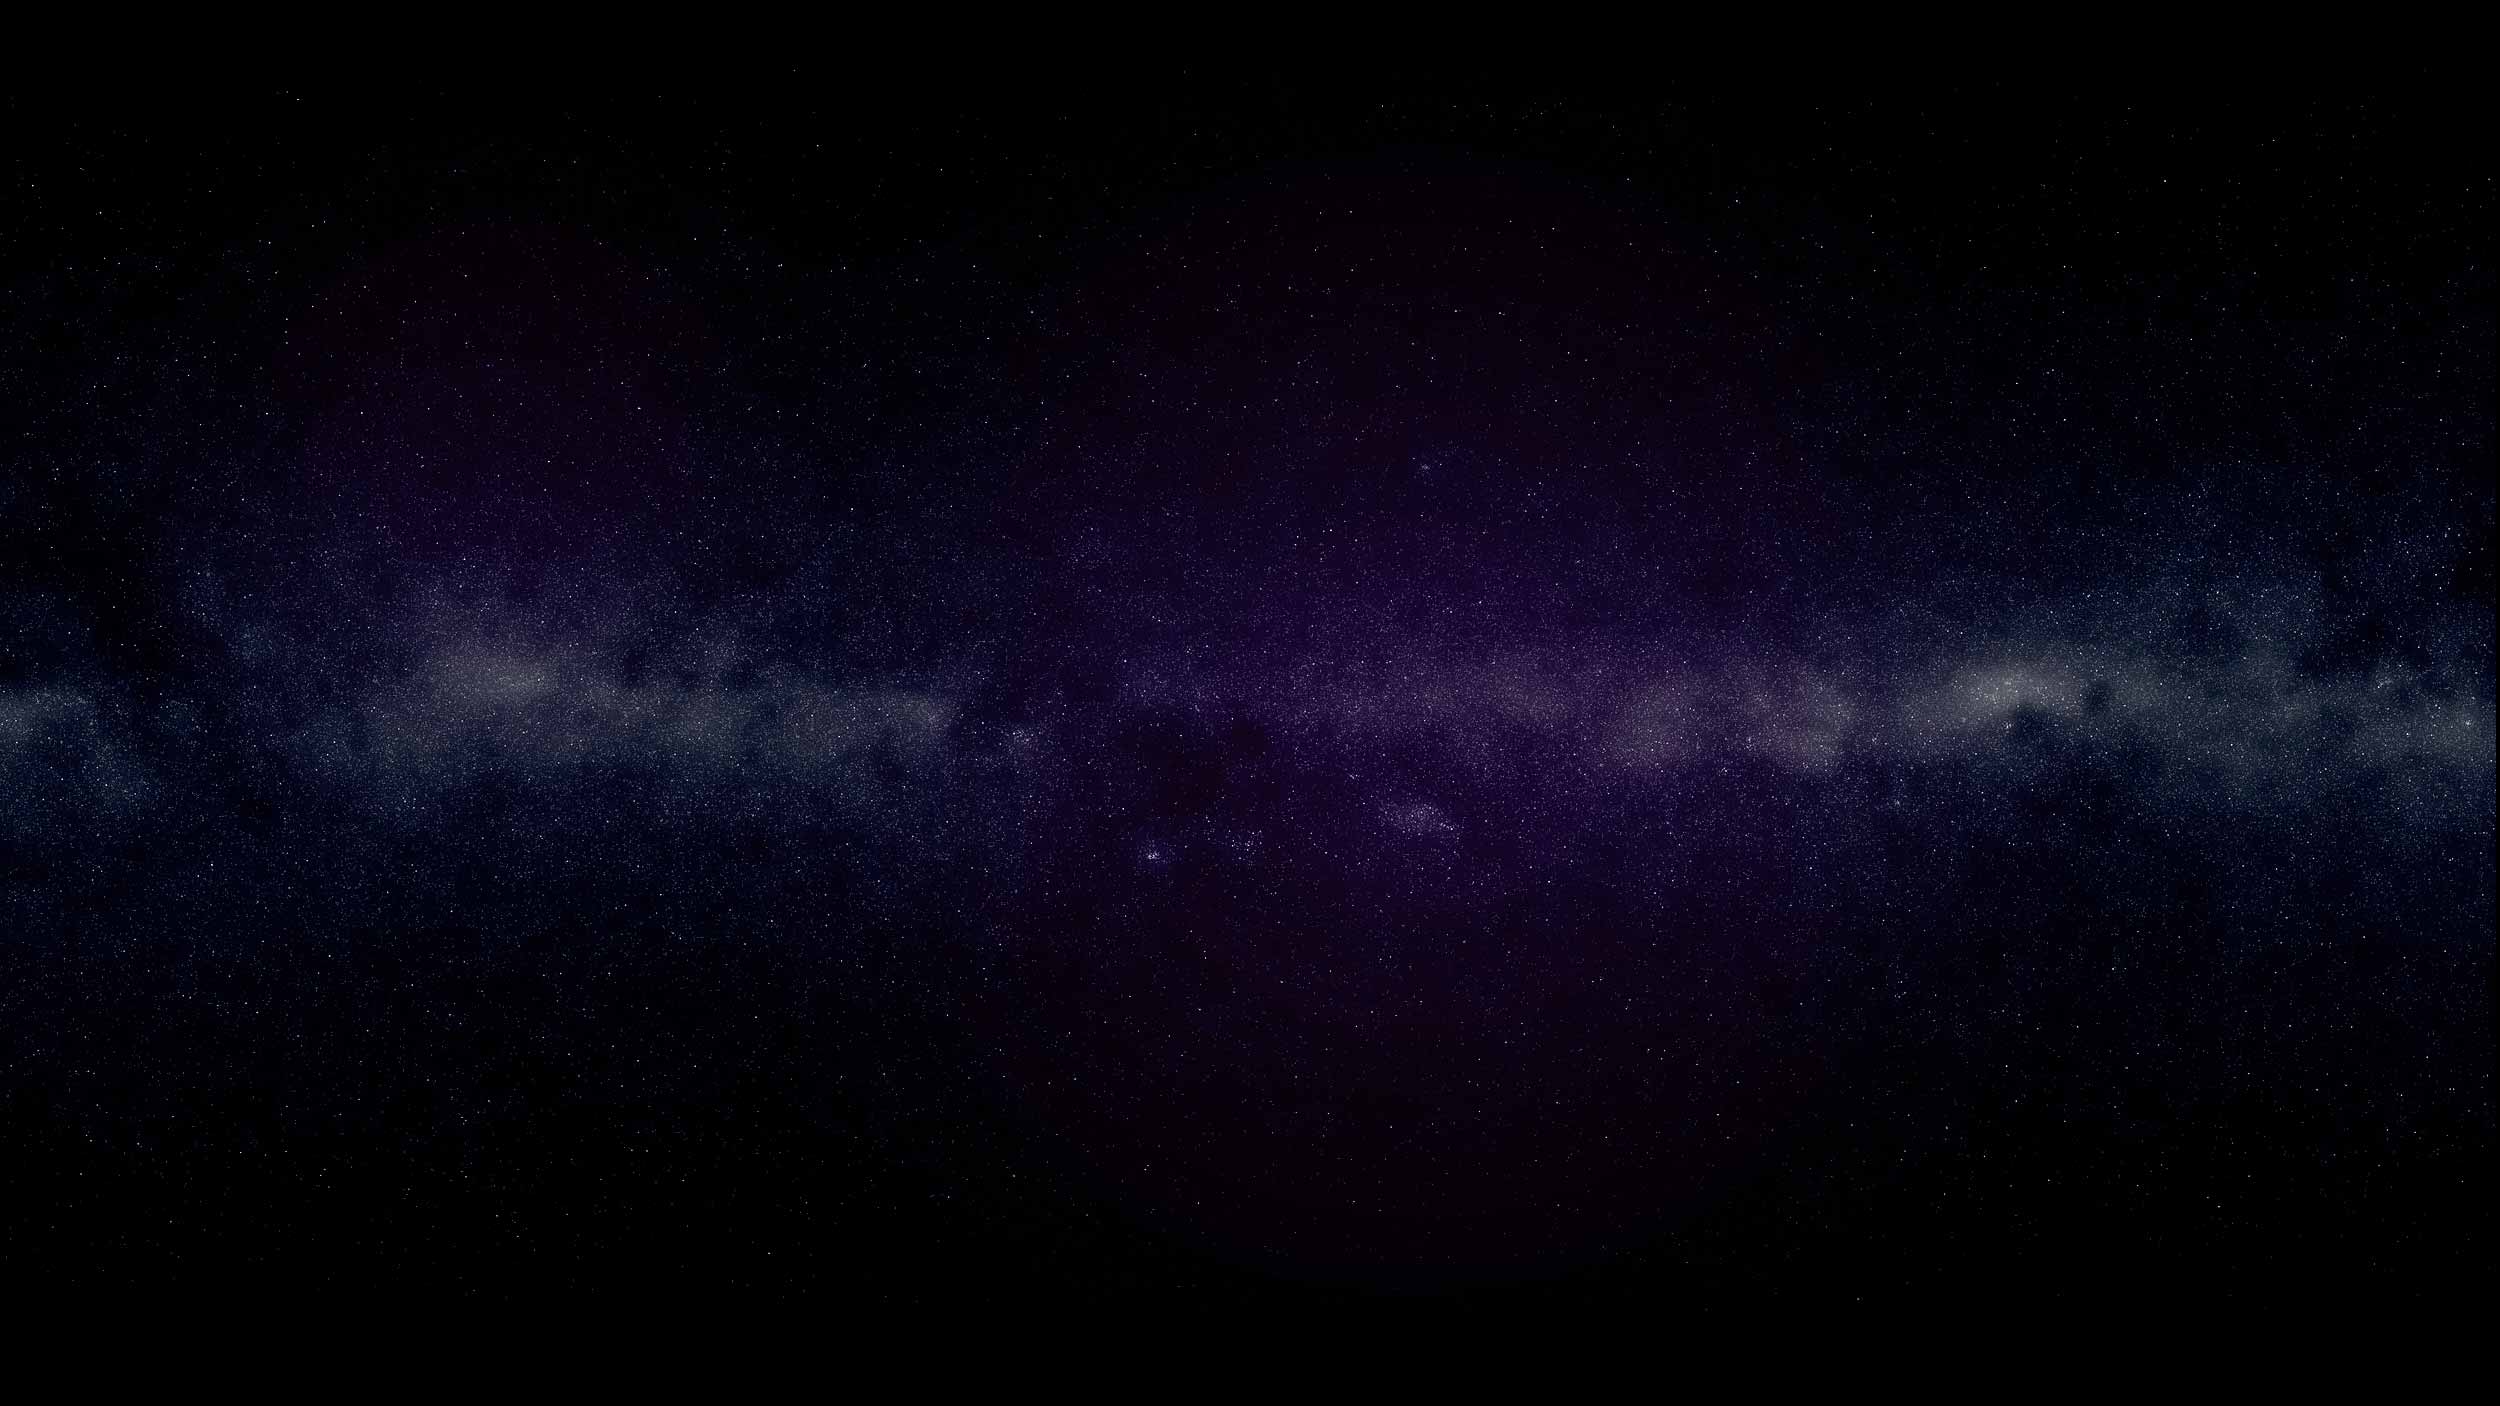 Фотографии размером 1024 2048 пикселей сохранили. Космос звезды. Темный космос. Пустой космос. Космический фон.